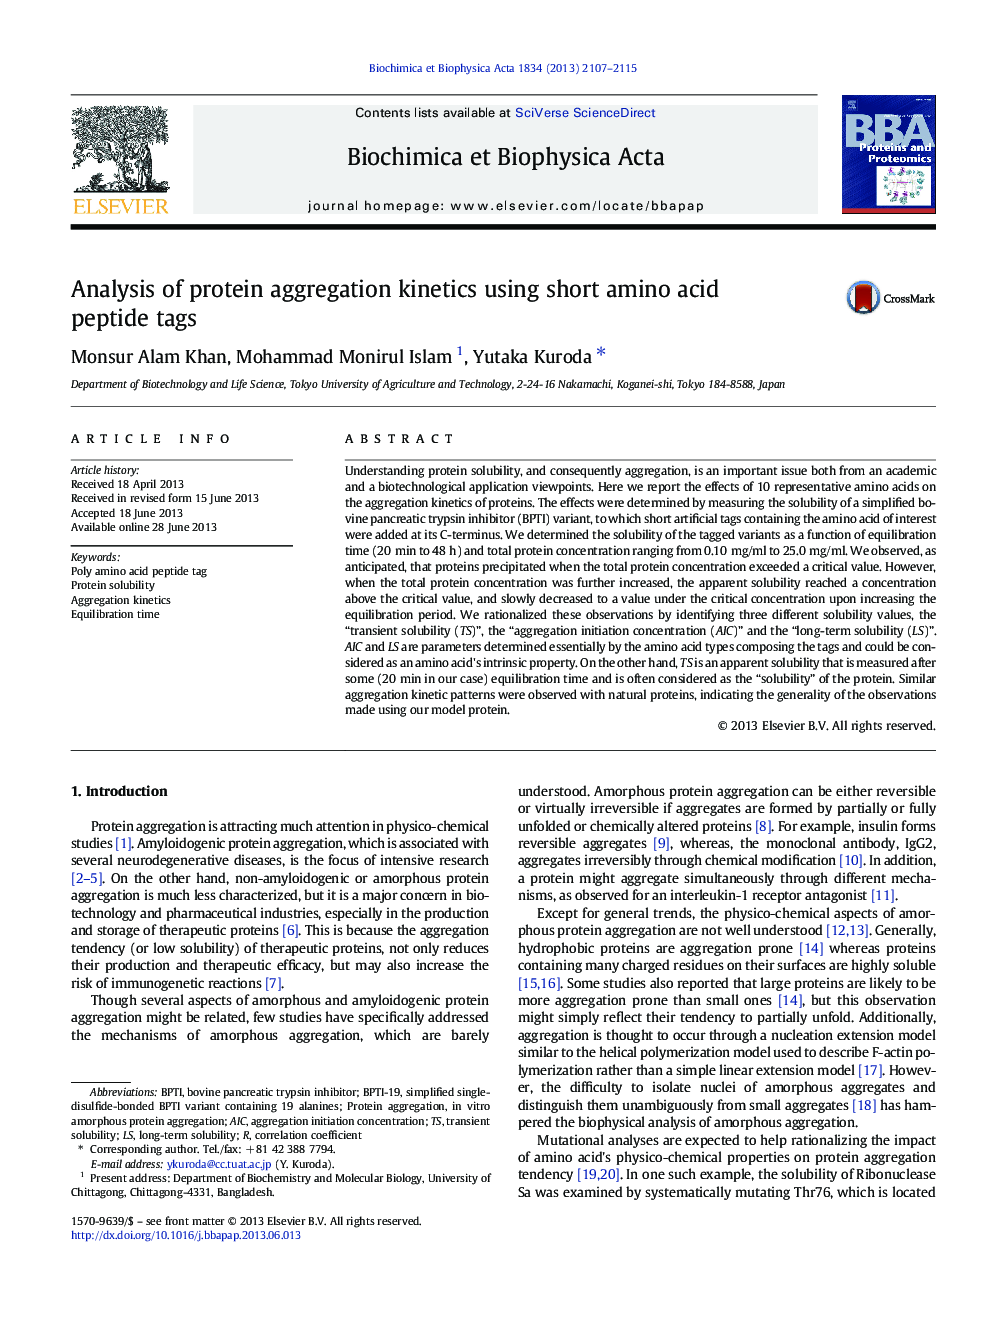 تجزیه و تحلیل سینتیک تجمع پروتئین با استفاده از تگ های پپتید اسید آمینه کوتاه 